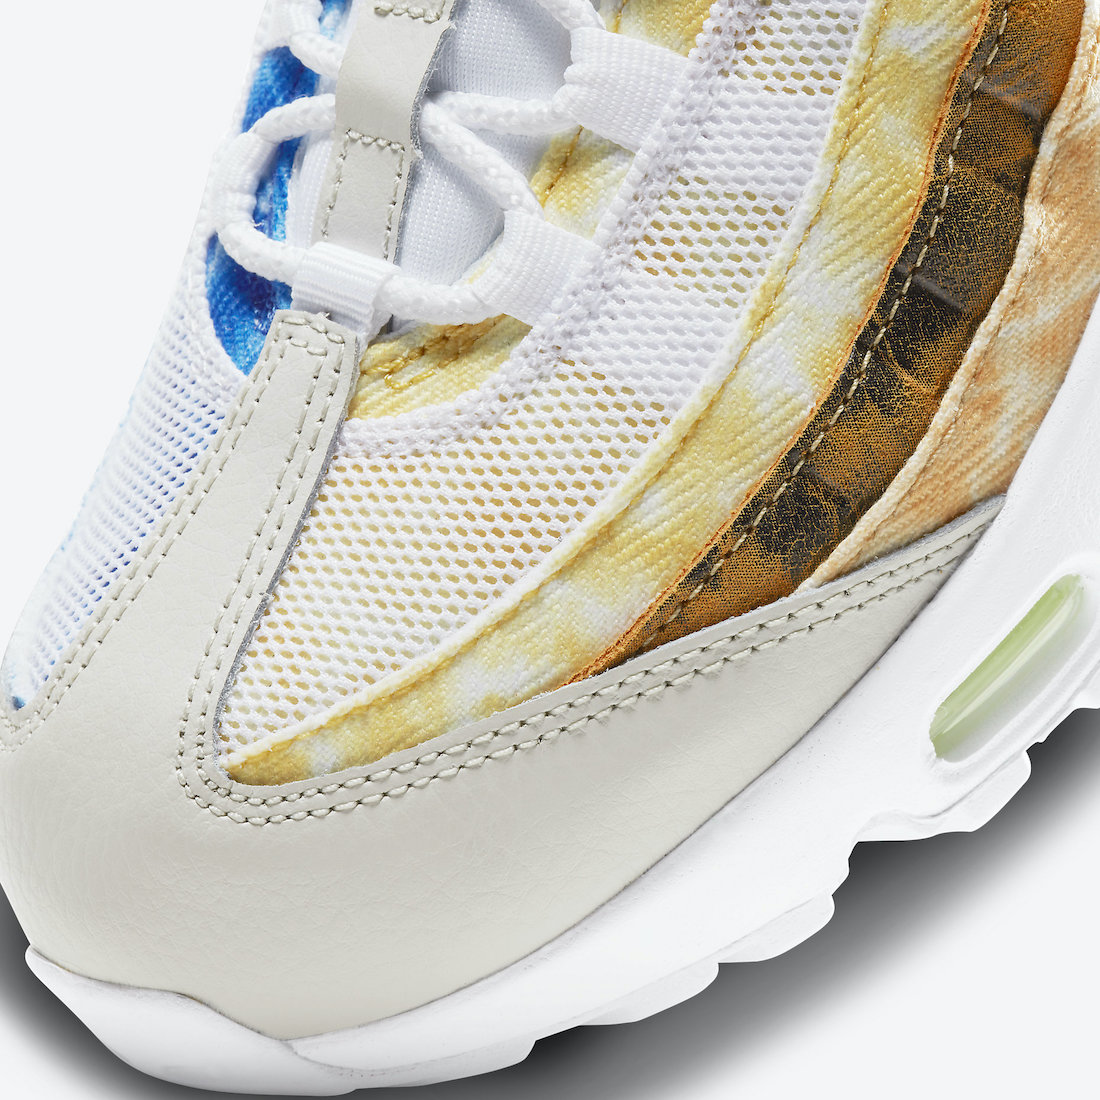 Nike Air Max 95 White Multi-Color DJ4594-100 Release Date Info